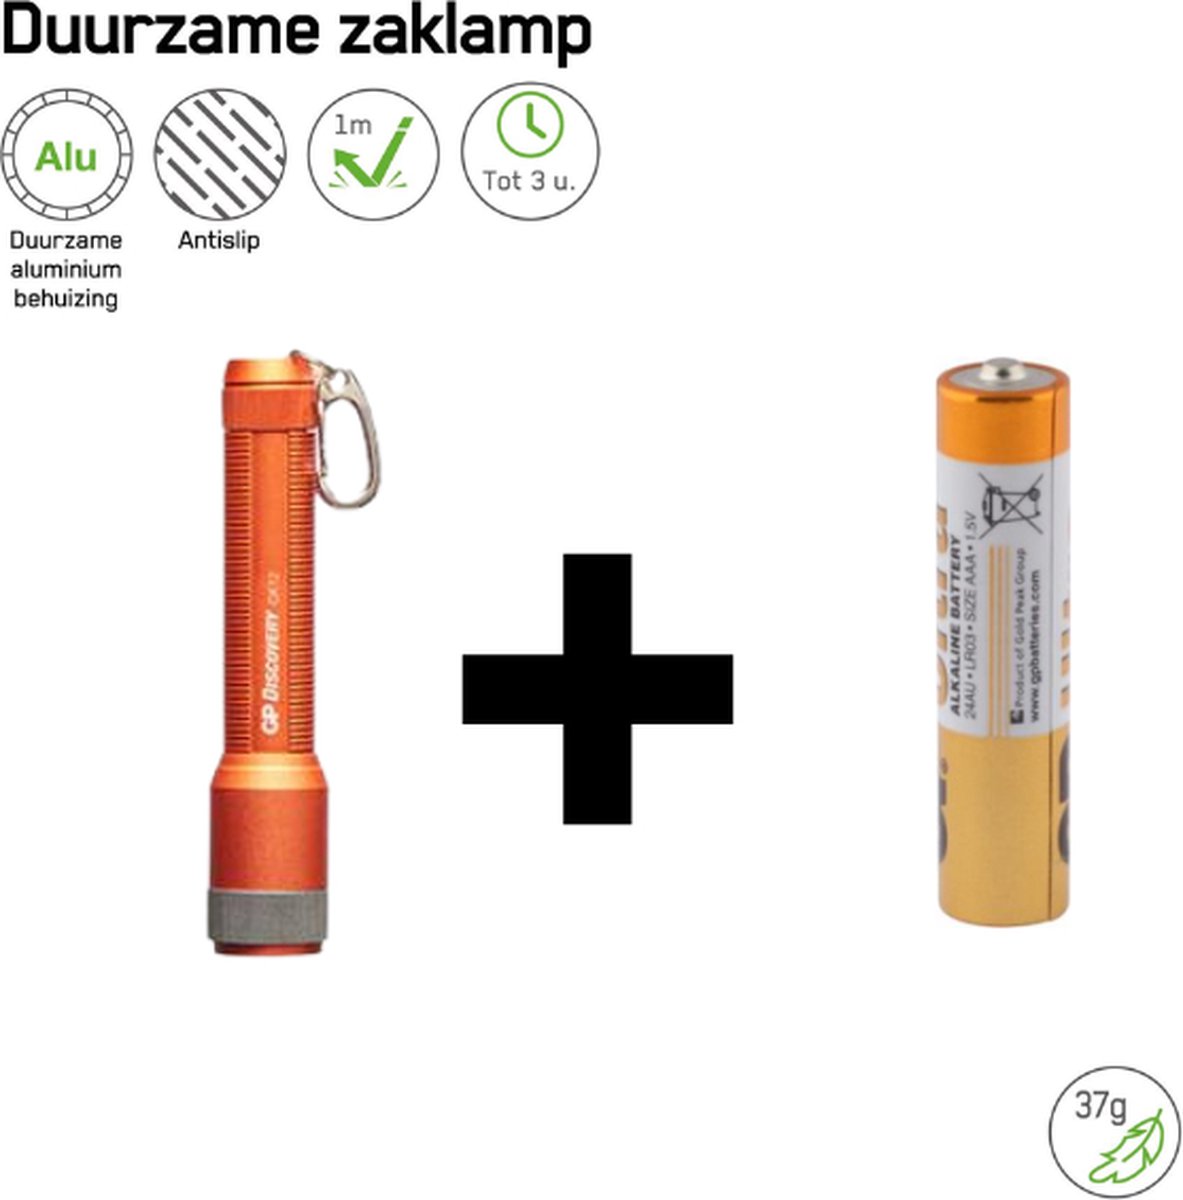 GP CK12 Zaklamp kleur Oranje inclusief batterij - 20 Lumen - IPX4 - Sleutelhanger